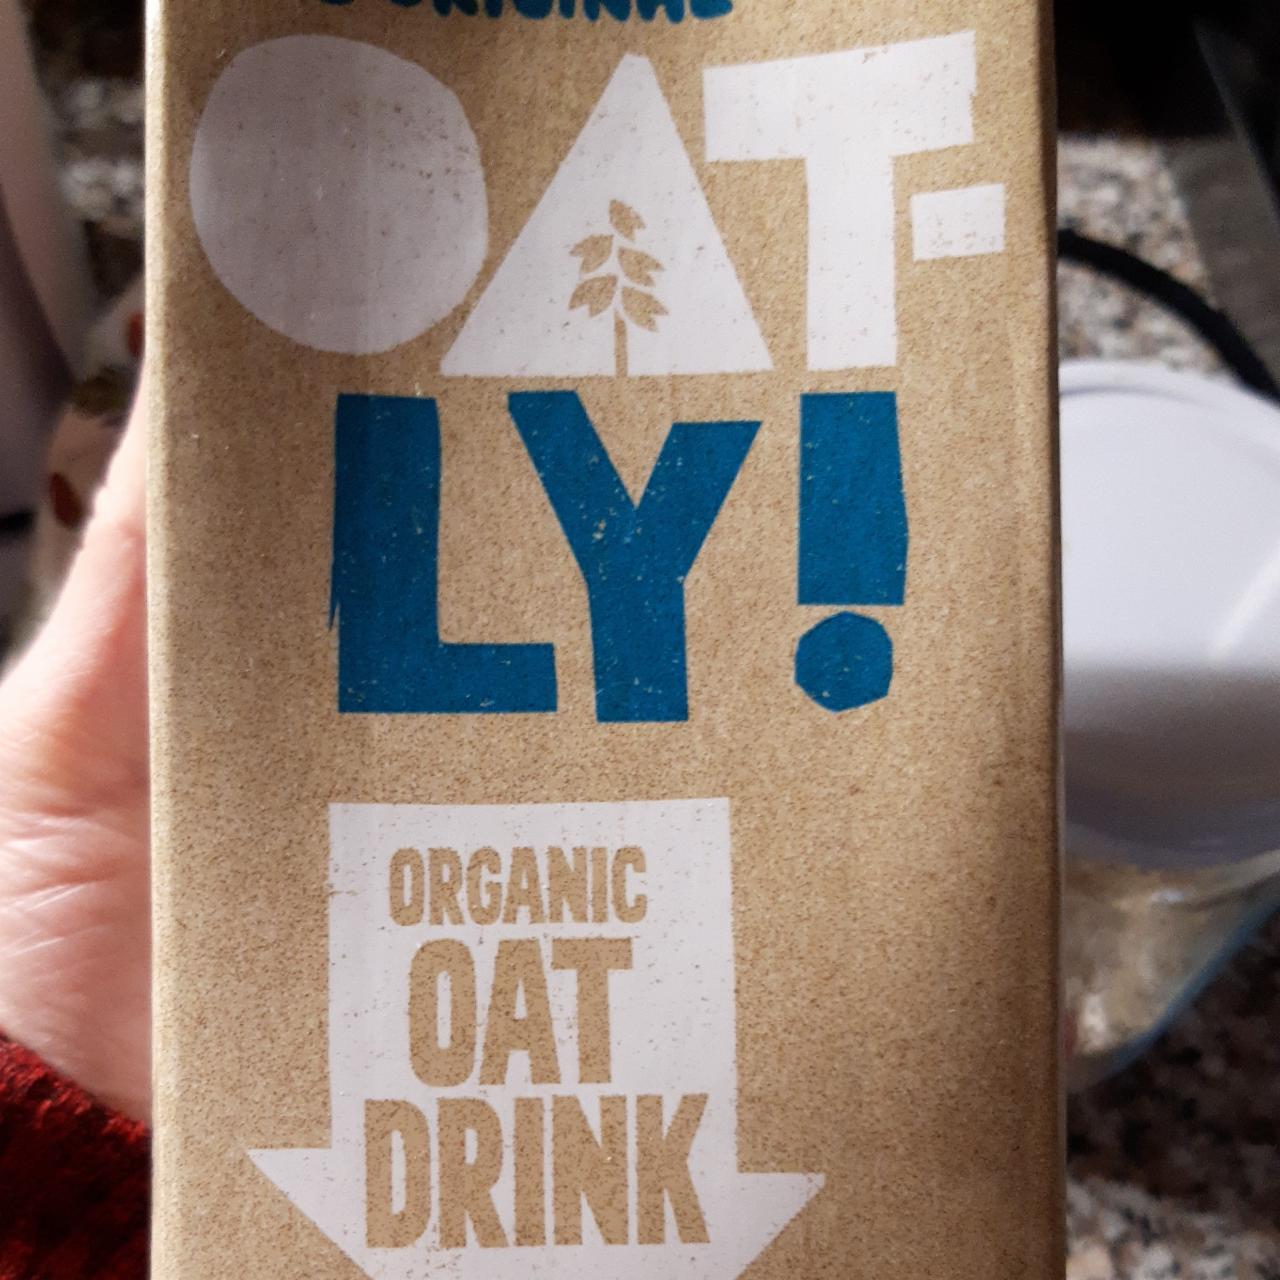 Fotografie - Organic Oat Drink Oatly!